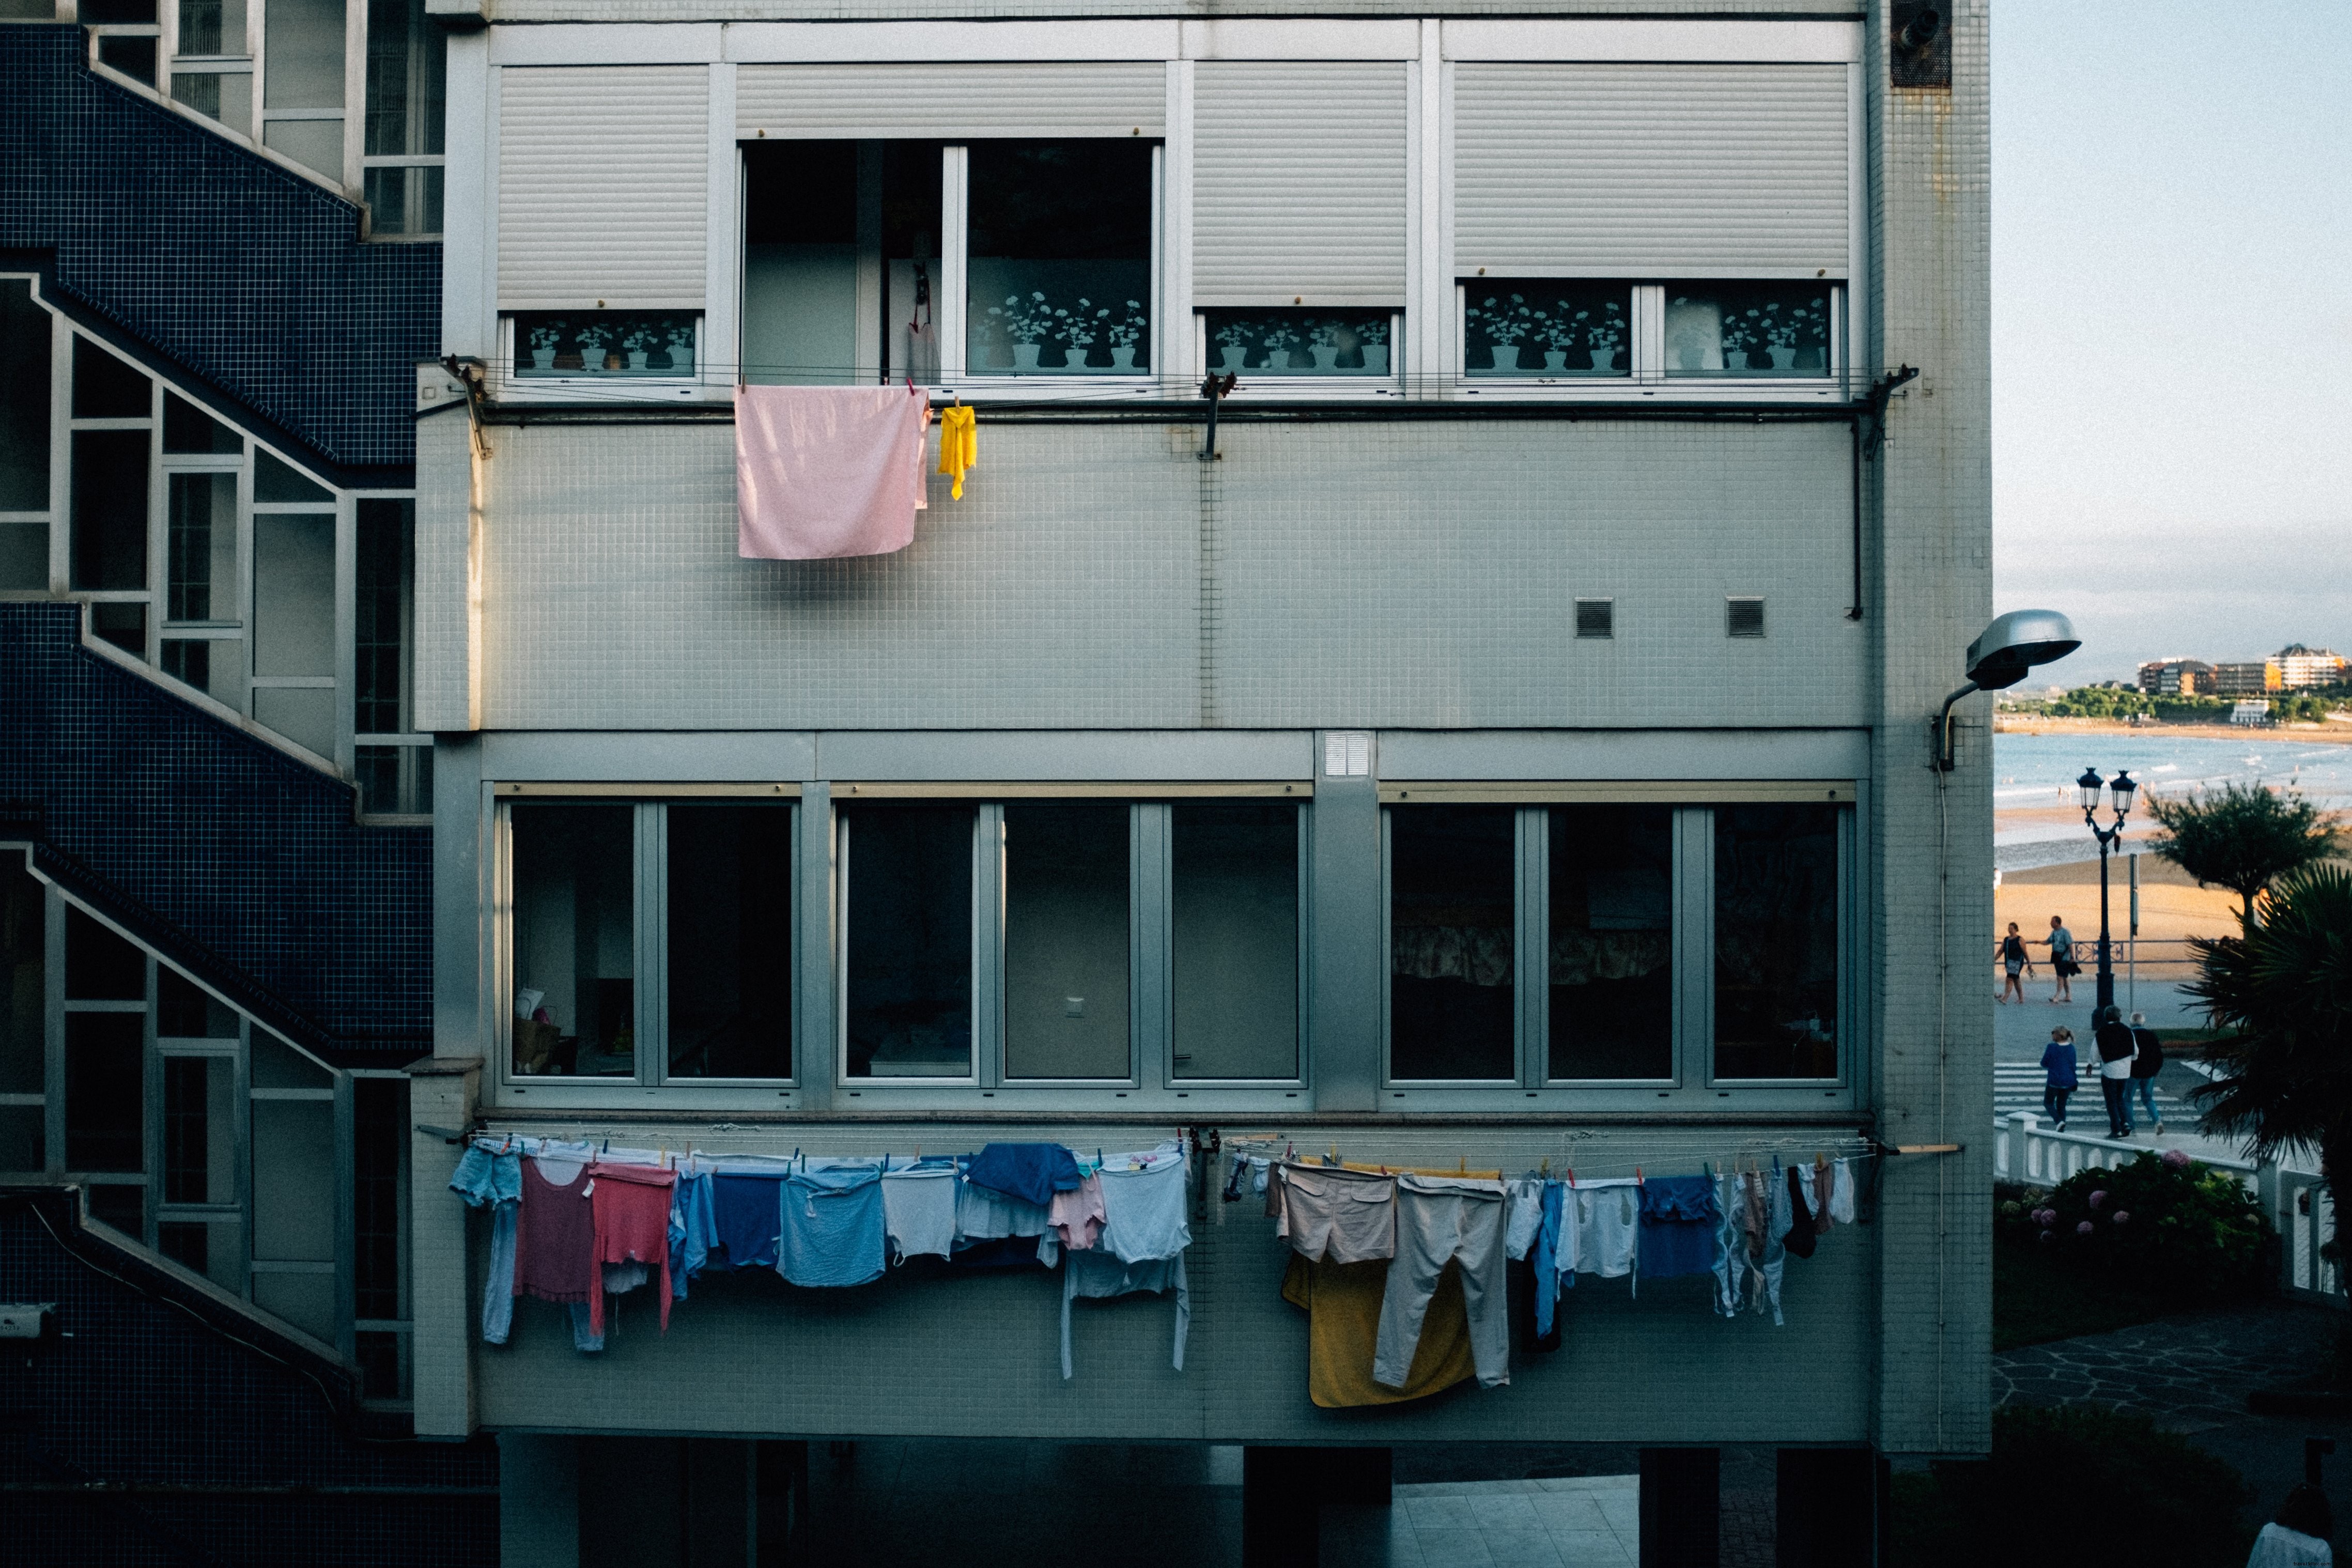 Il volto grigio di un condominio drappeggiato in linee di vestiti Photo